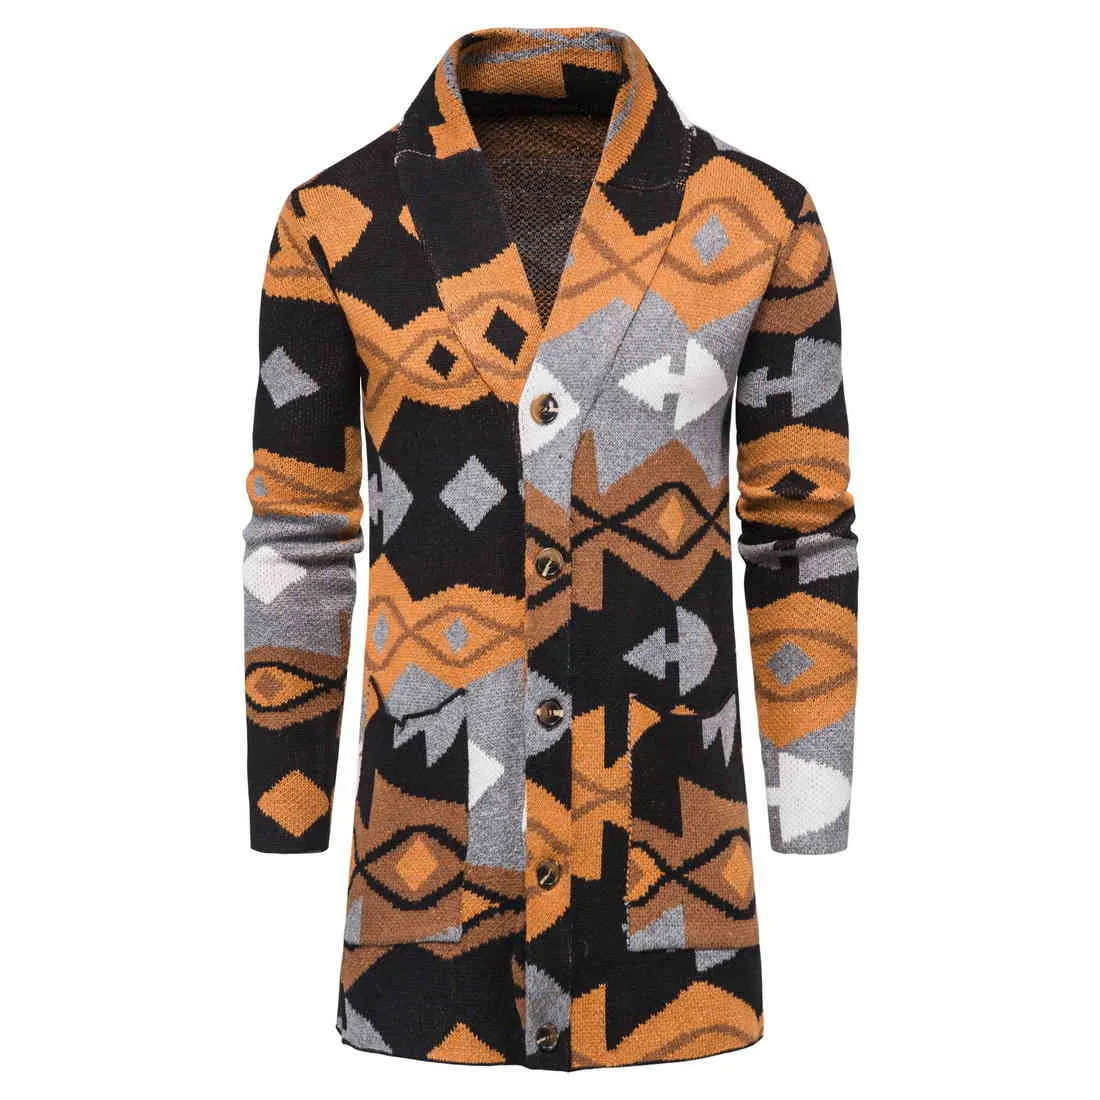 Camouflage Sweater Mens National Style Long Chaud Épais Cardigan Hommes Casual Slim Tricoté Outwear Pulls Surdimensionné Marque Veste 210524